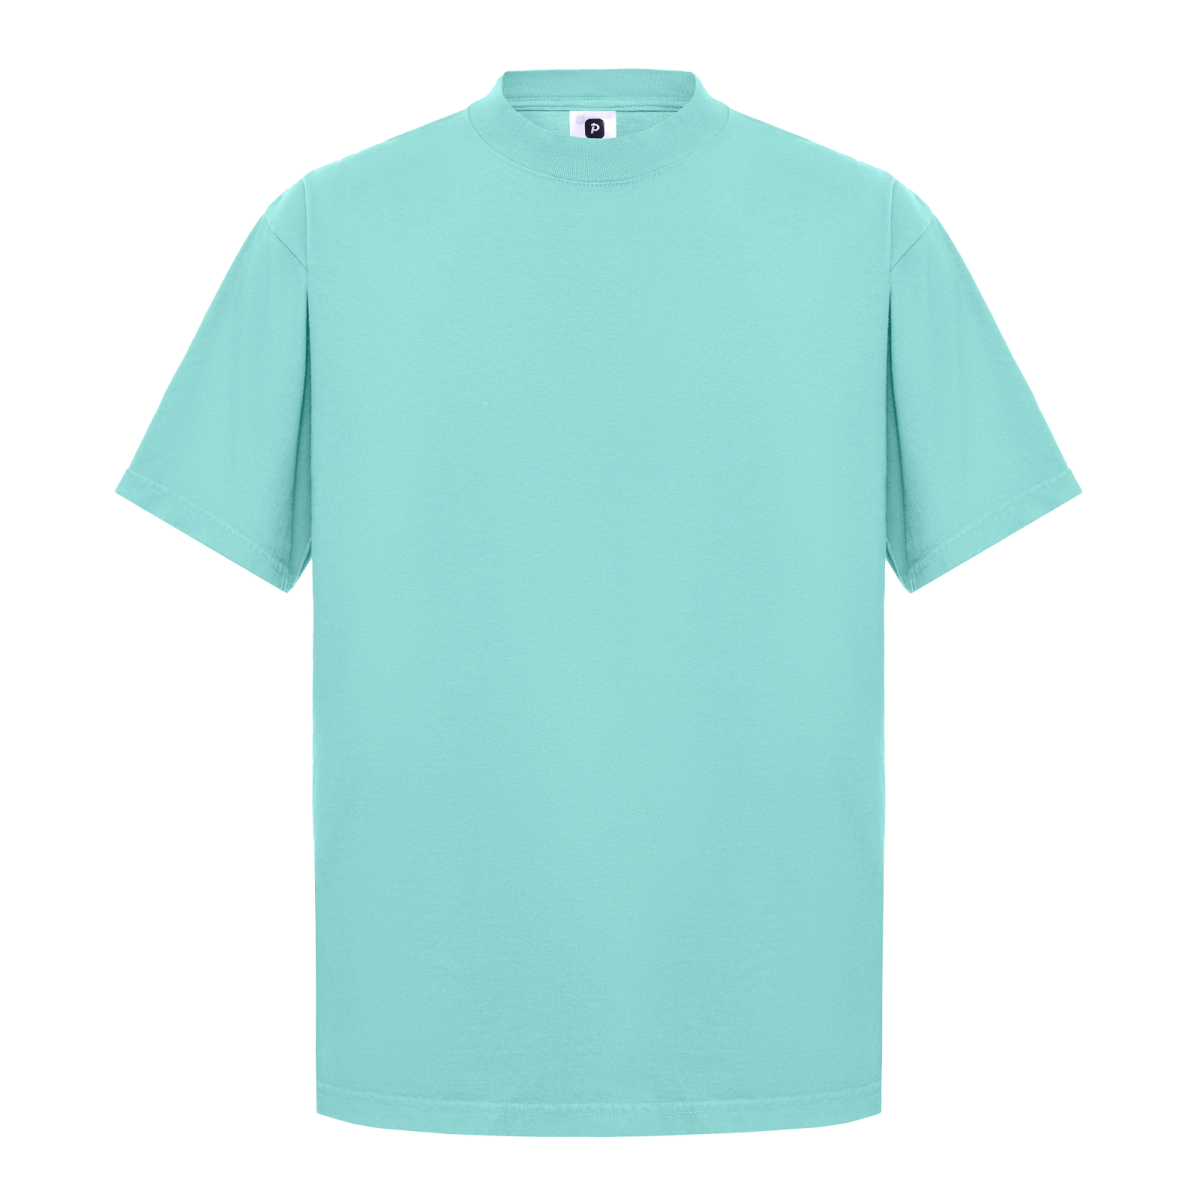 Garment Dye T-Shirt - Standard Size - Powder Blue